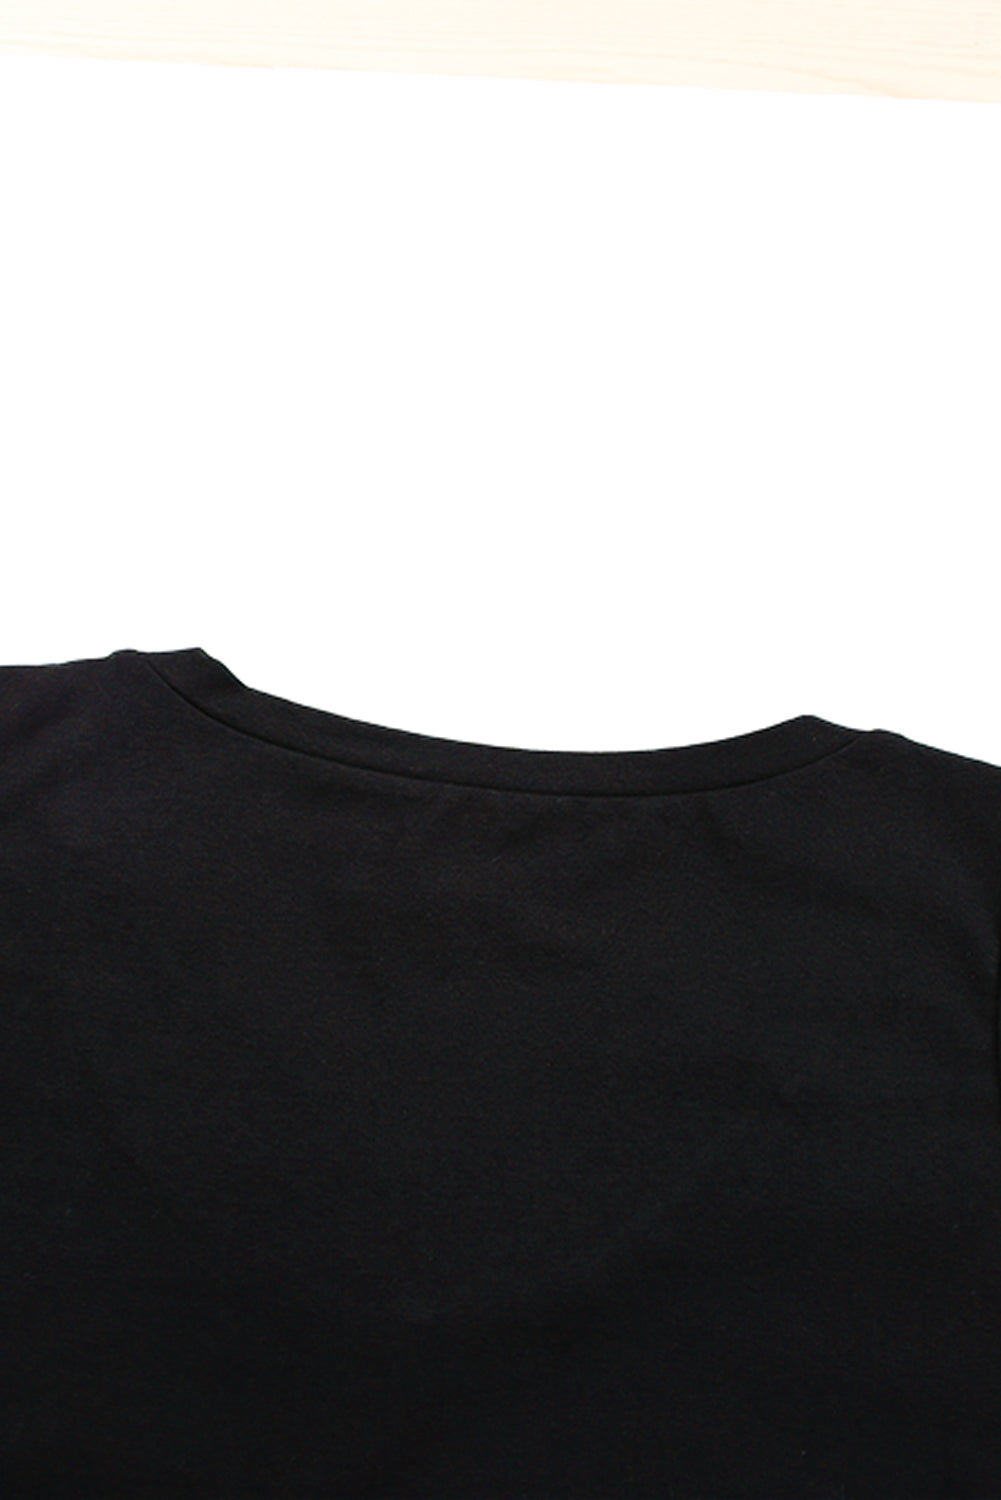 Crna majica bez rukava s izdubljenim ovratnikom